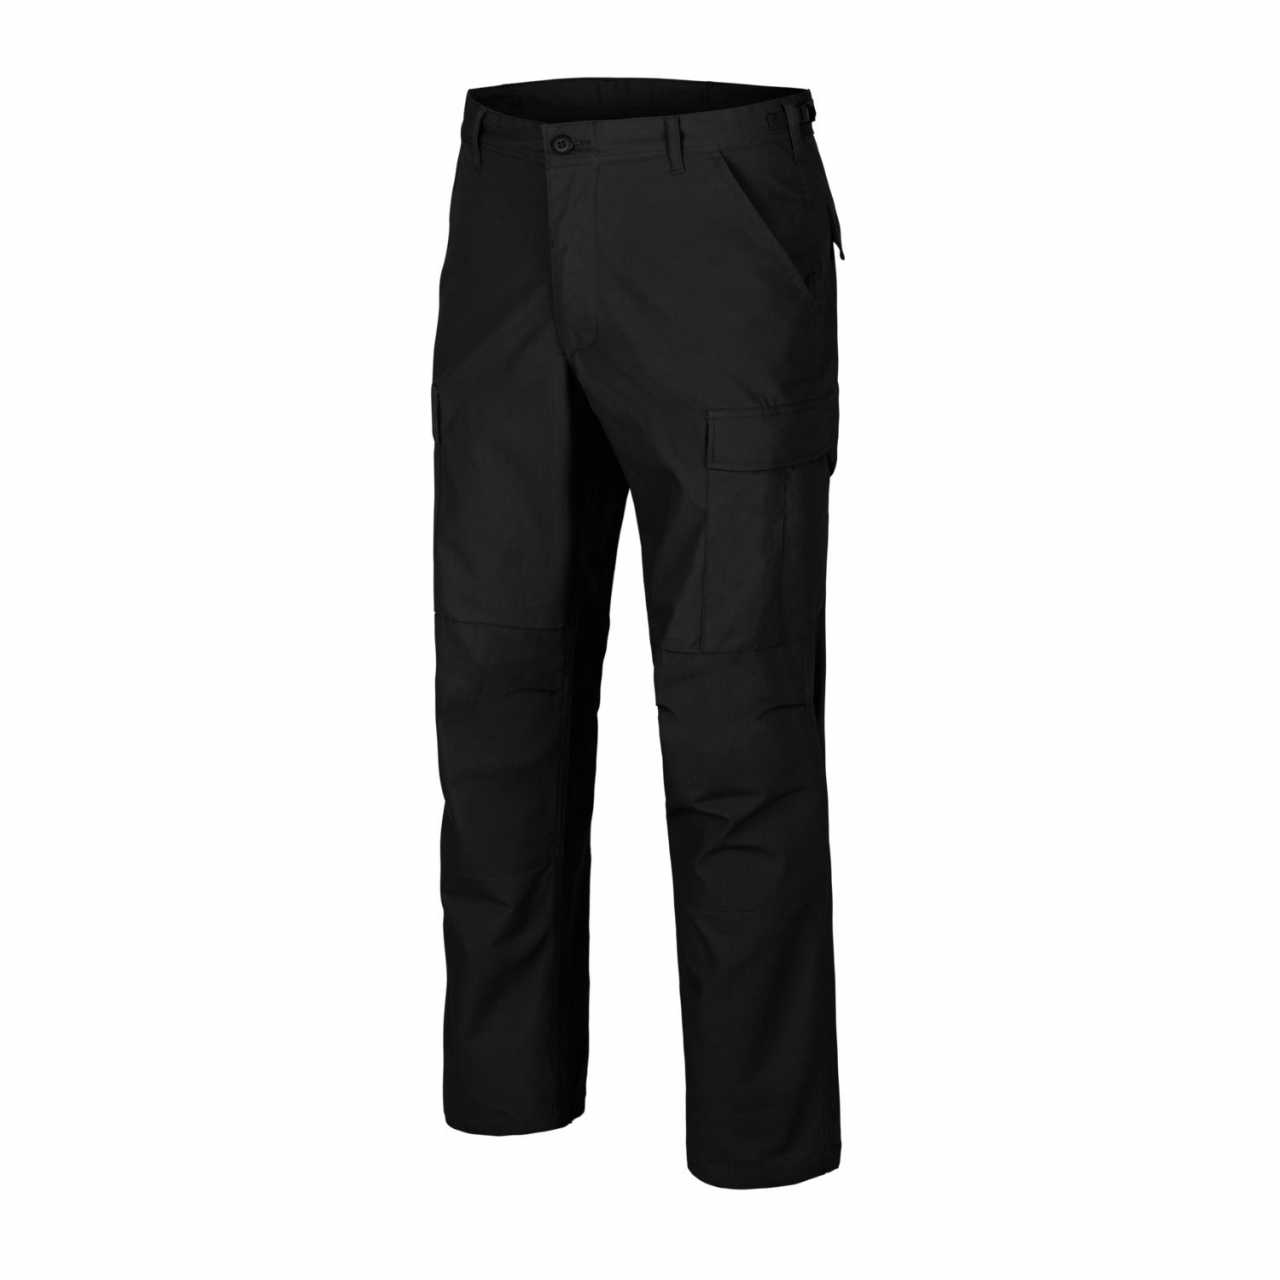 Kalhoty Helikon BDU Pants Poly Ripstop - černé, XL